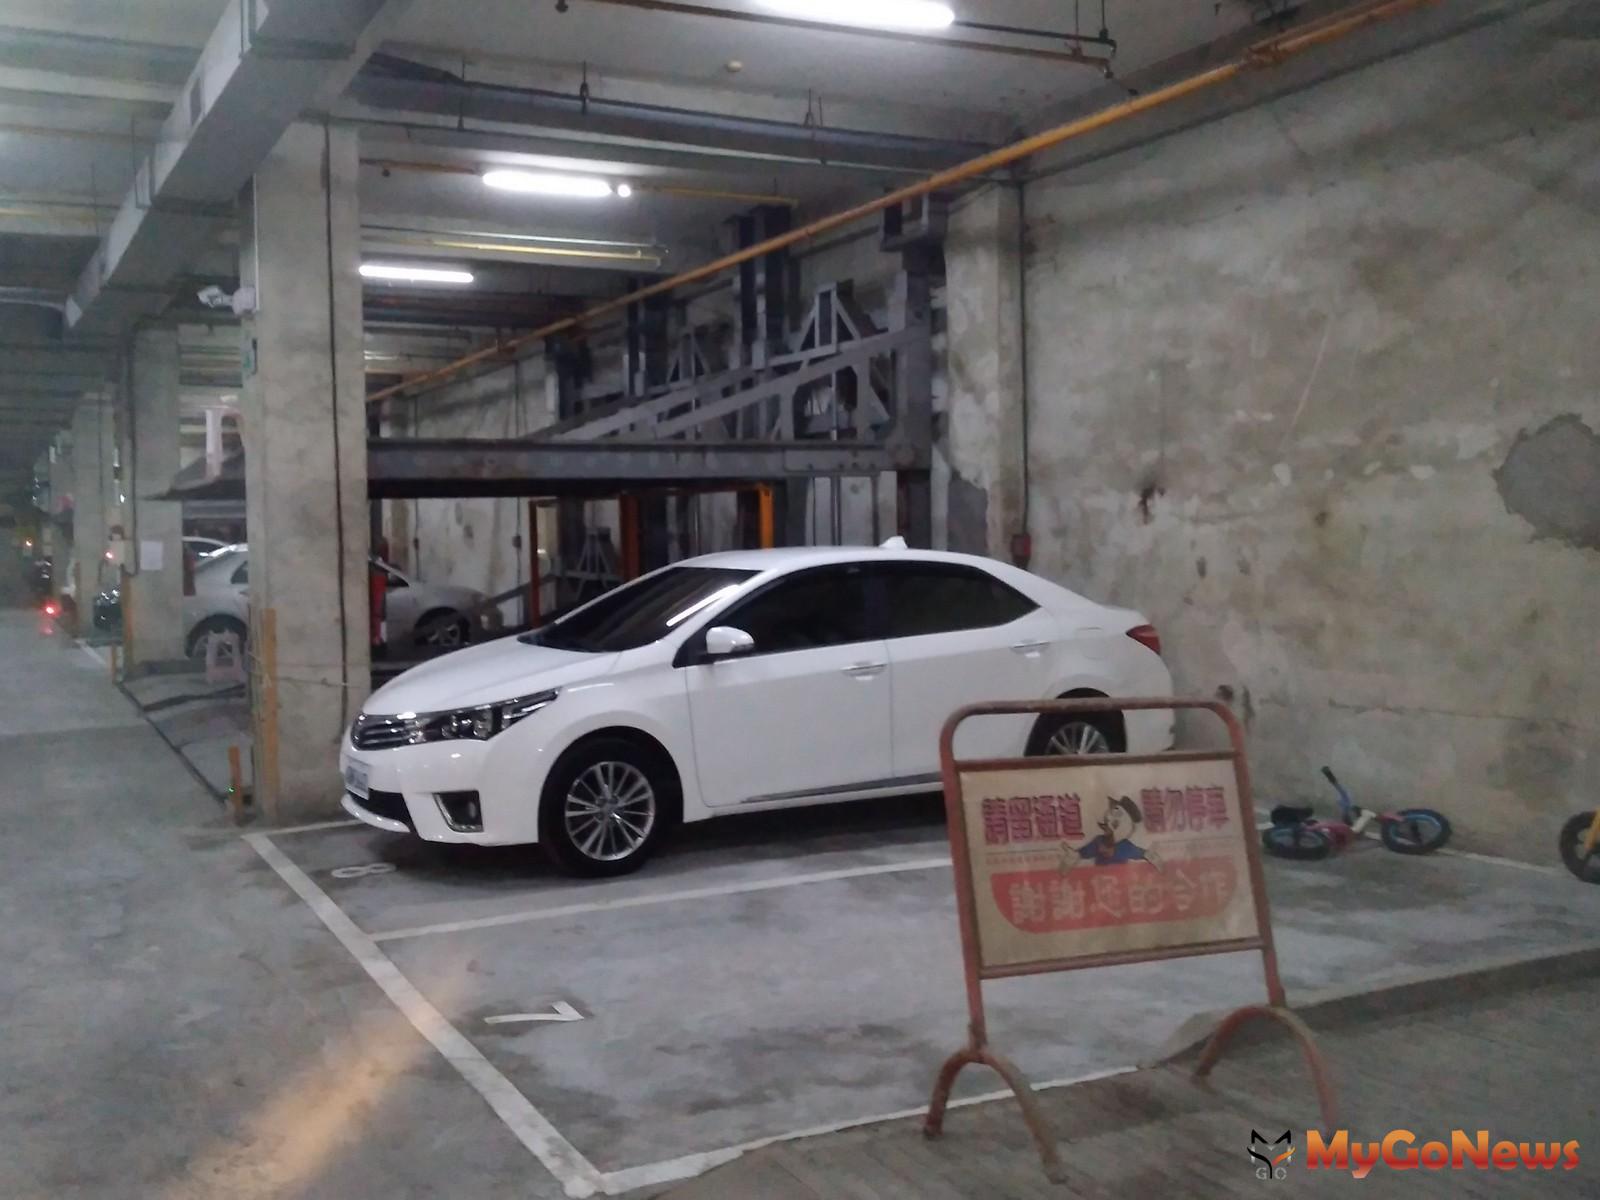 台南市近期一棟大樓成功完成機械車位合法變更為平面停車位案例，引起社會注意。(圖/台南市政府) MyGoNews房地產新聞 市場快訊